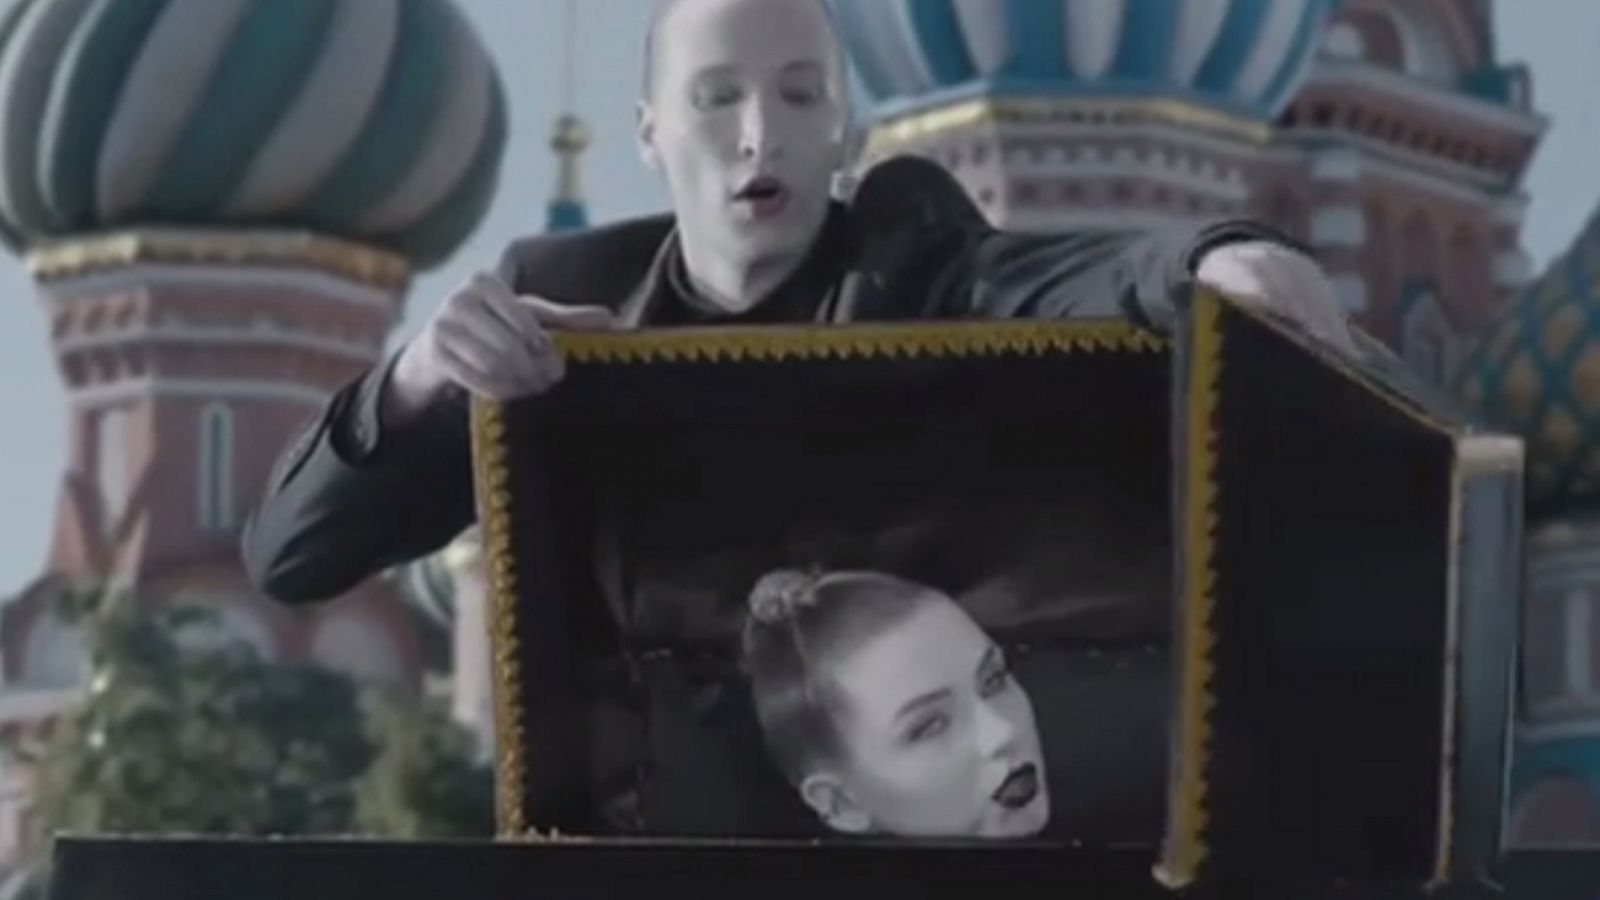 Rap Rusia: El rap ruso, la crítica social y Putin - RTVE.es